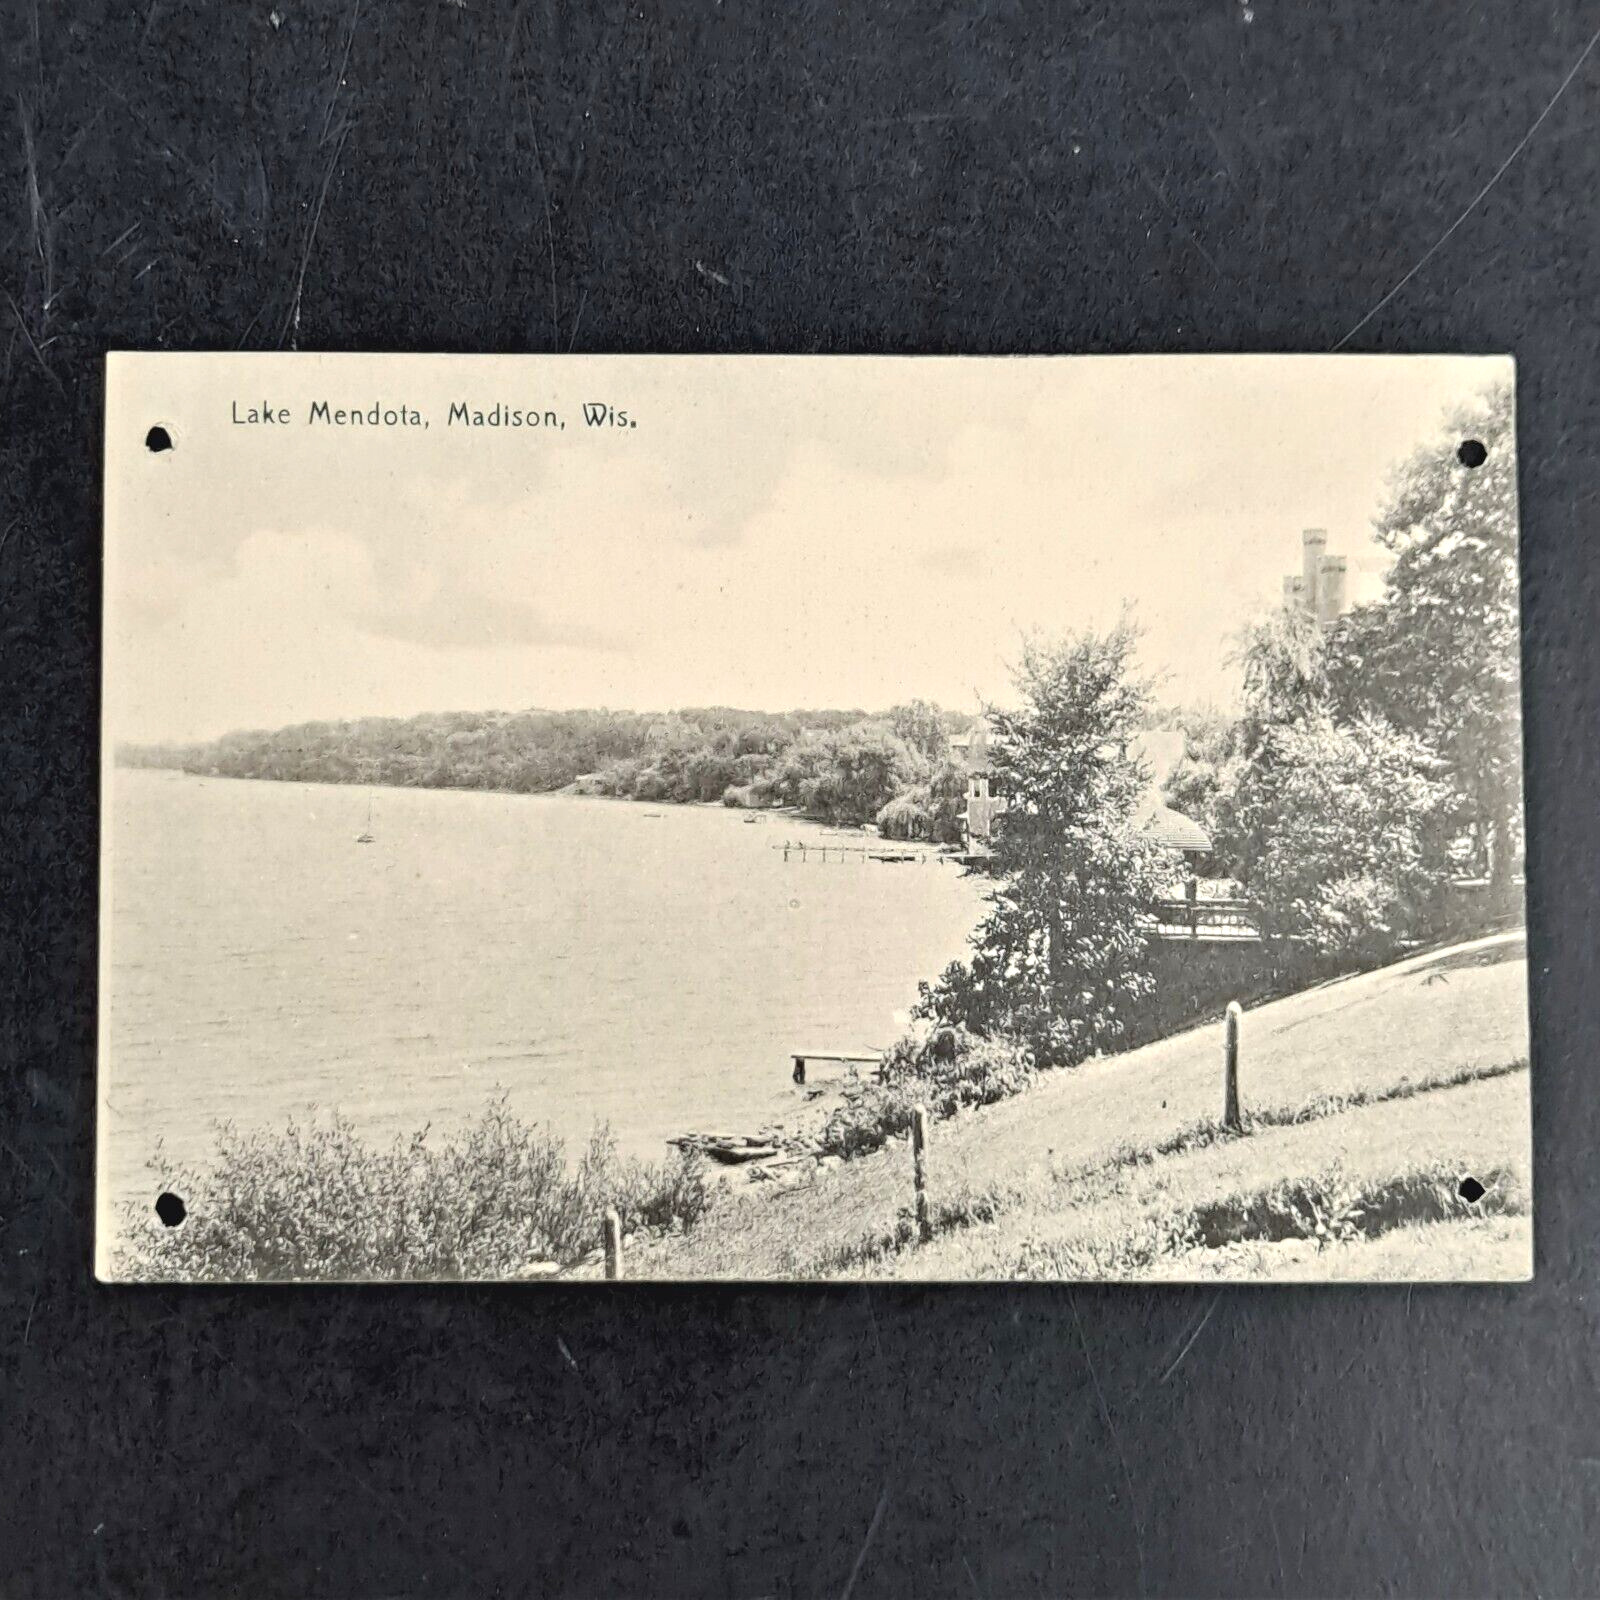 ANTIQUE PRE-WW1 DB ROTOGRAPH POST CARD OF SHORELINE SCENE IN LAKE MENDOTA, WI